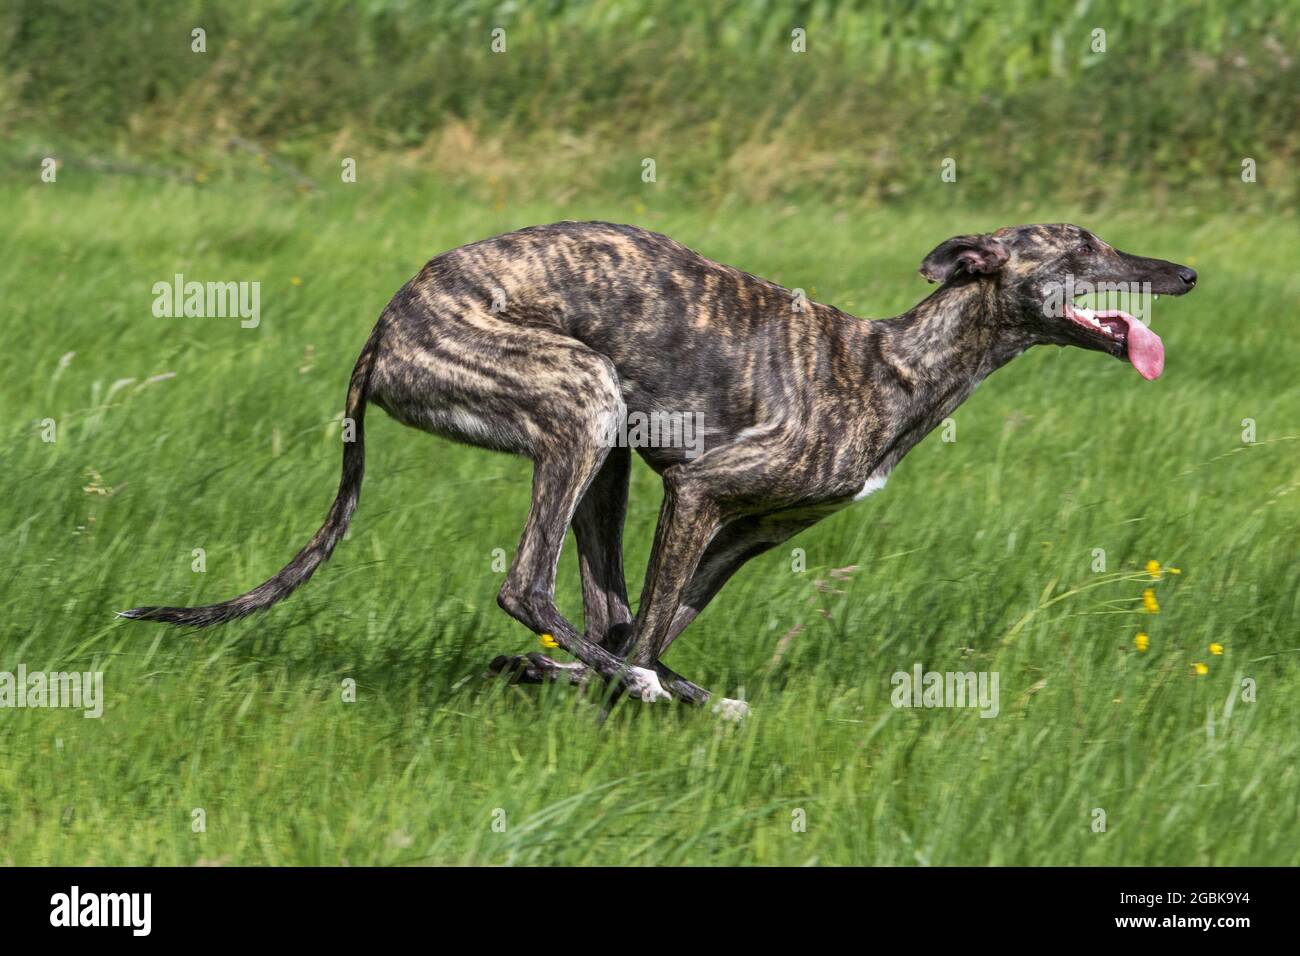 Gestromt Galgo Español / barcino Spanish galgo / atigrado Spanischer Windhund, Hunderasse der Windhunde, die im Feld laufen Stockfoto